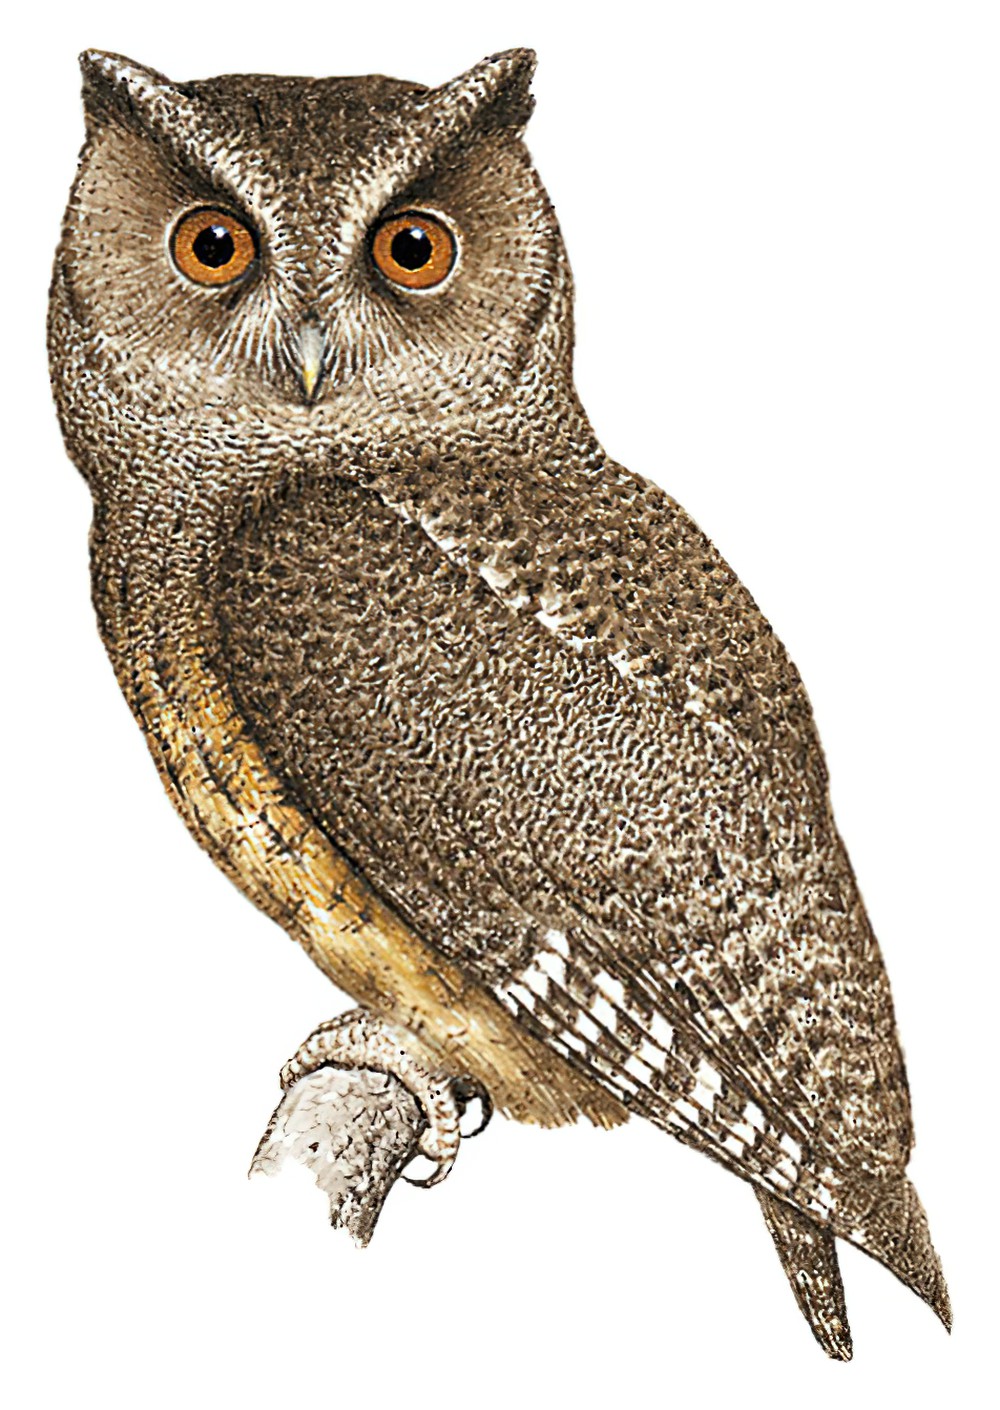 Tawny-bellied Screech-Owl / Megascops watsonii